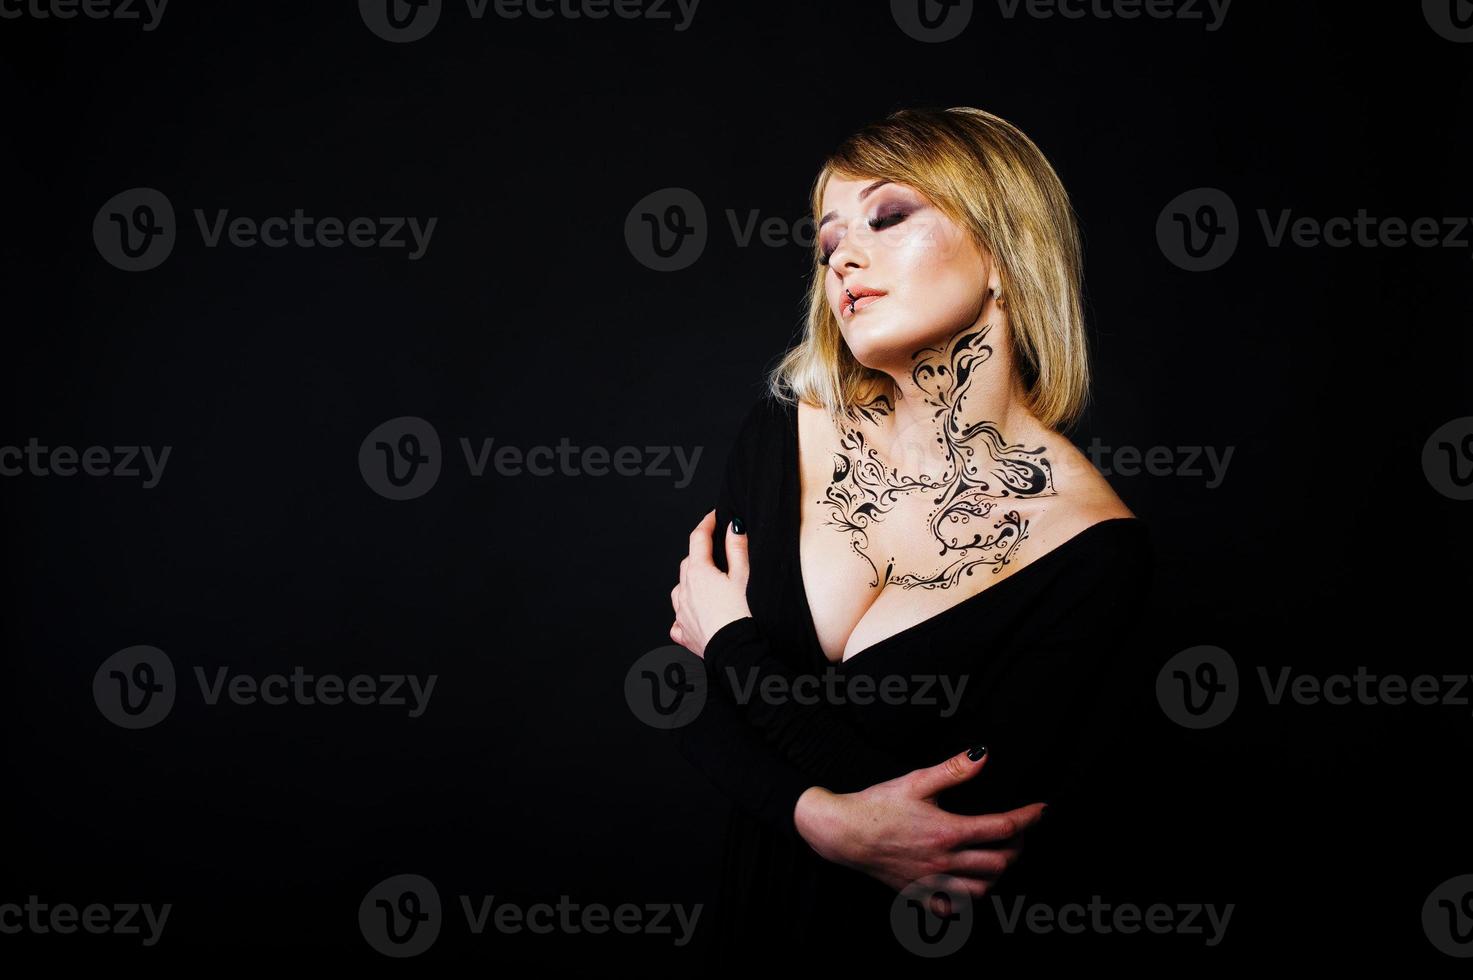 studio porträtt av blond tjej med ursprungligen smink på halsen, bär på svart klänning på mörk bakgrund. foto